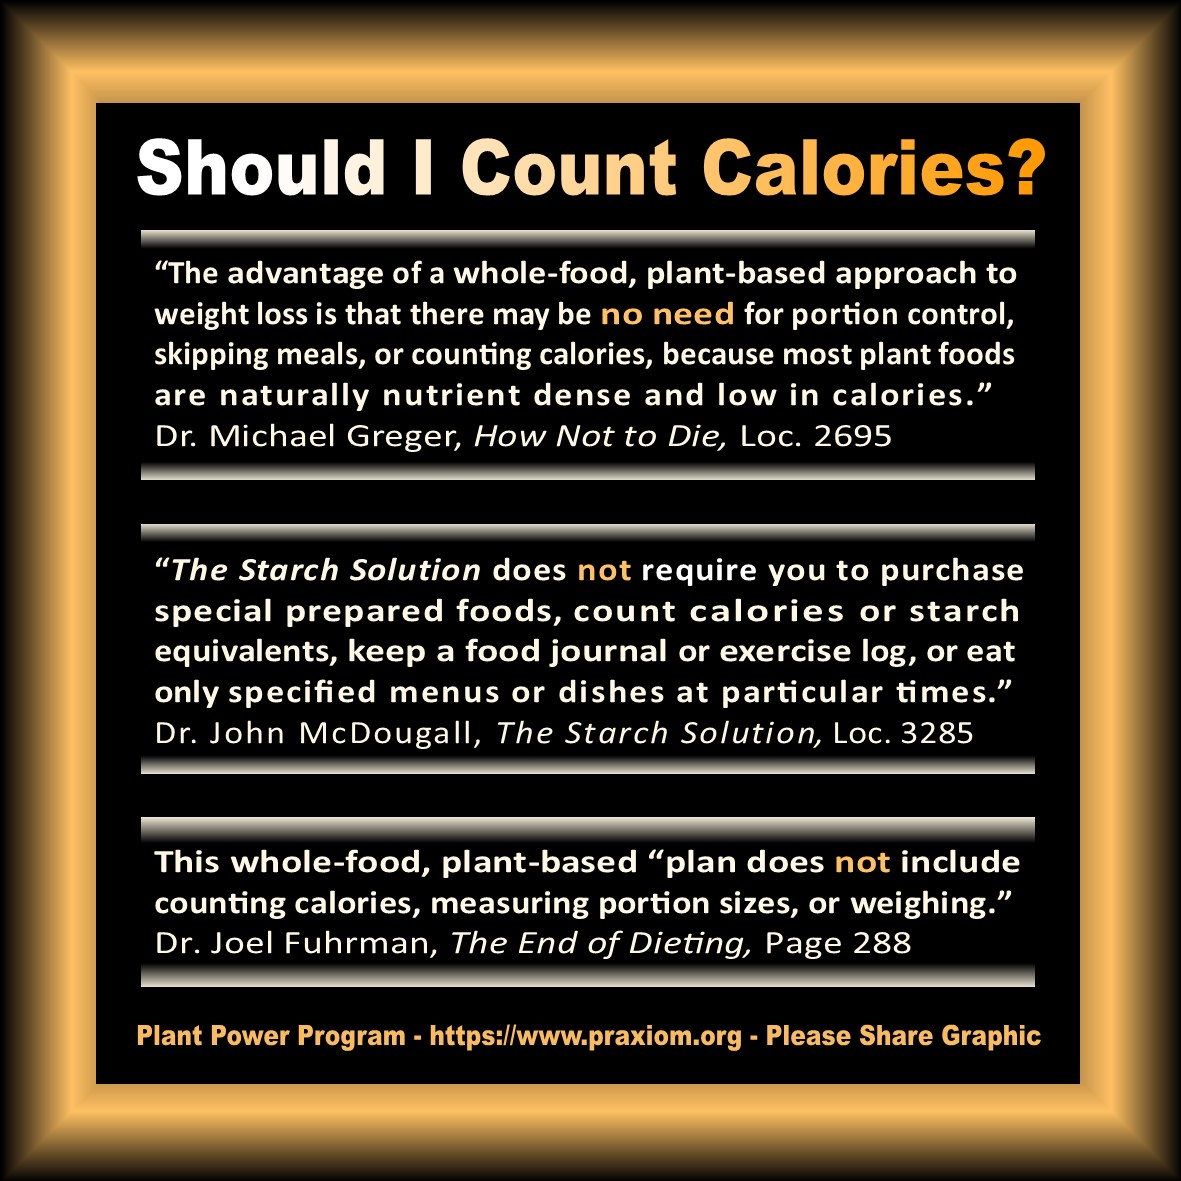 Should I count calories?